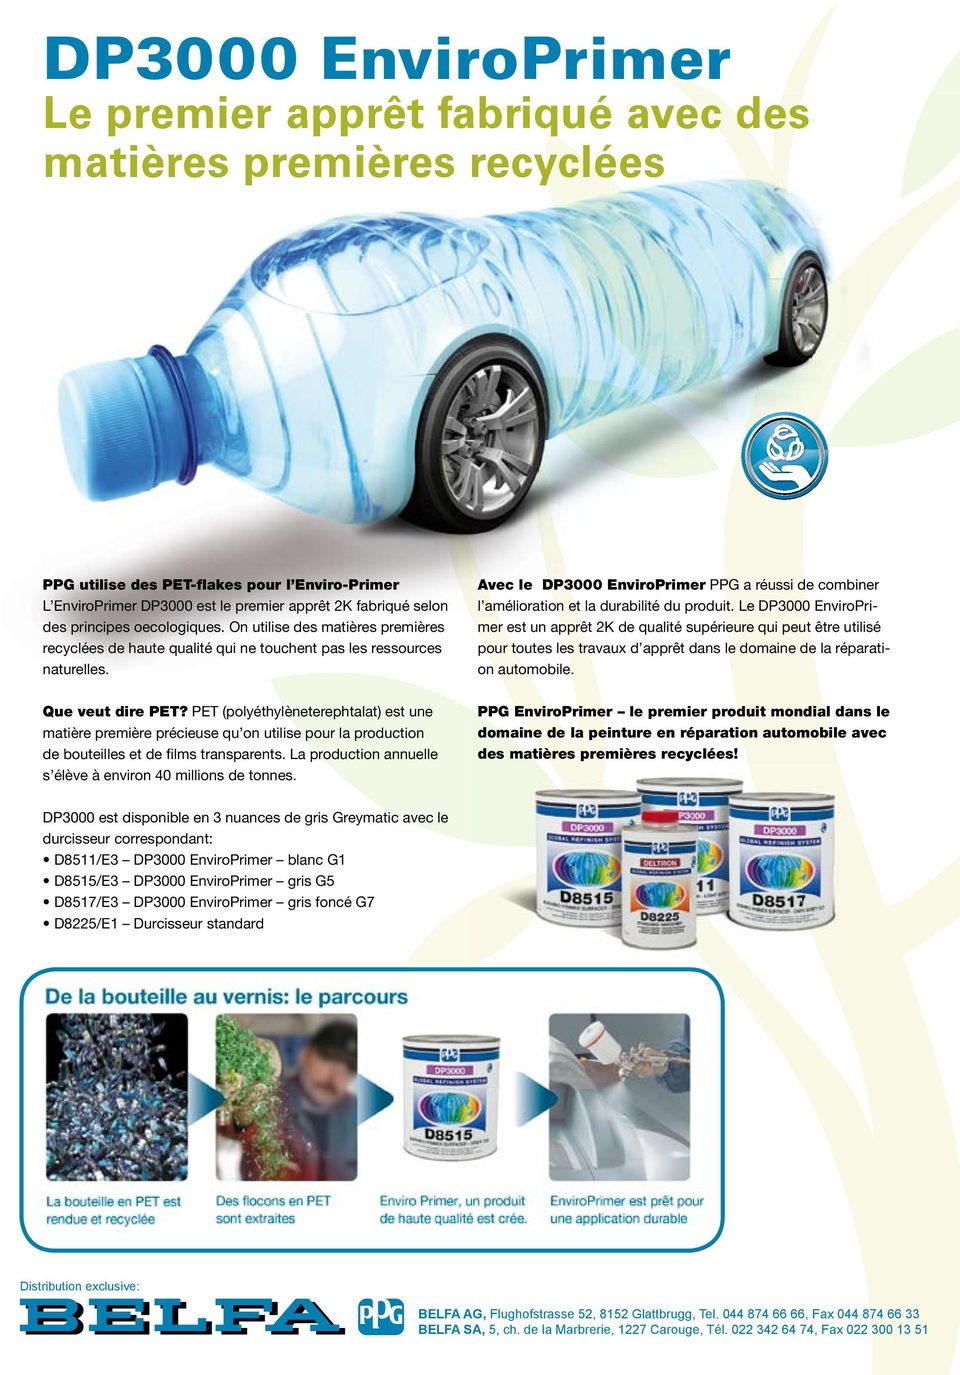 PET (polyéthylèneterephtalat) est une matière première précieuse qu on utilise pour la production de bouteilles et de films transparents.